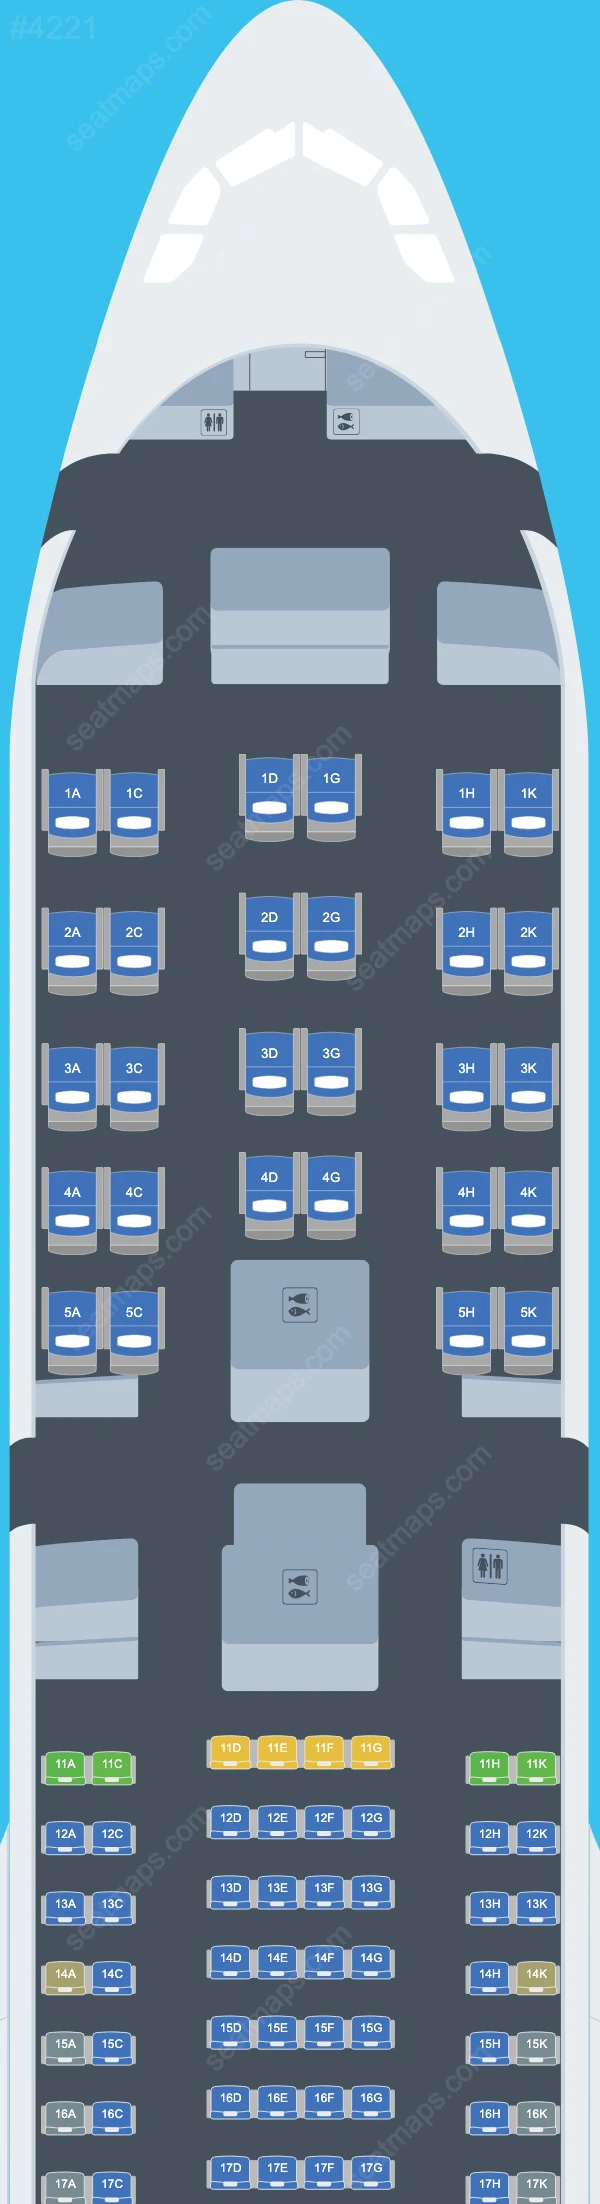 Aeroflot Airbus A330 Seat Maps A330-300 V.1